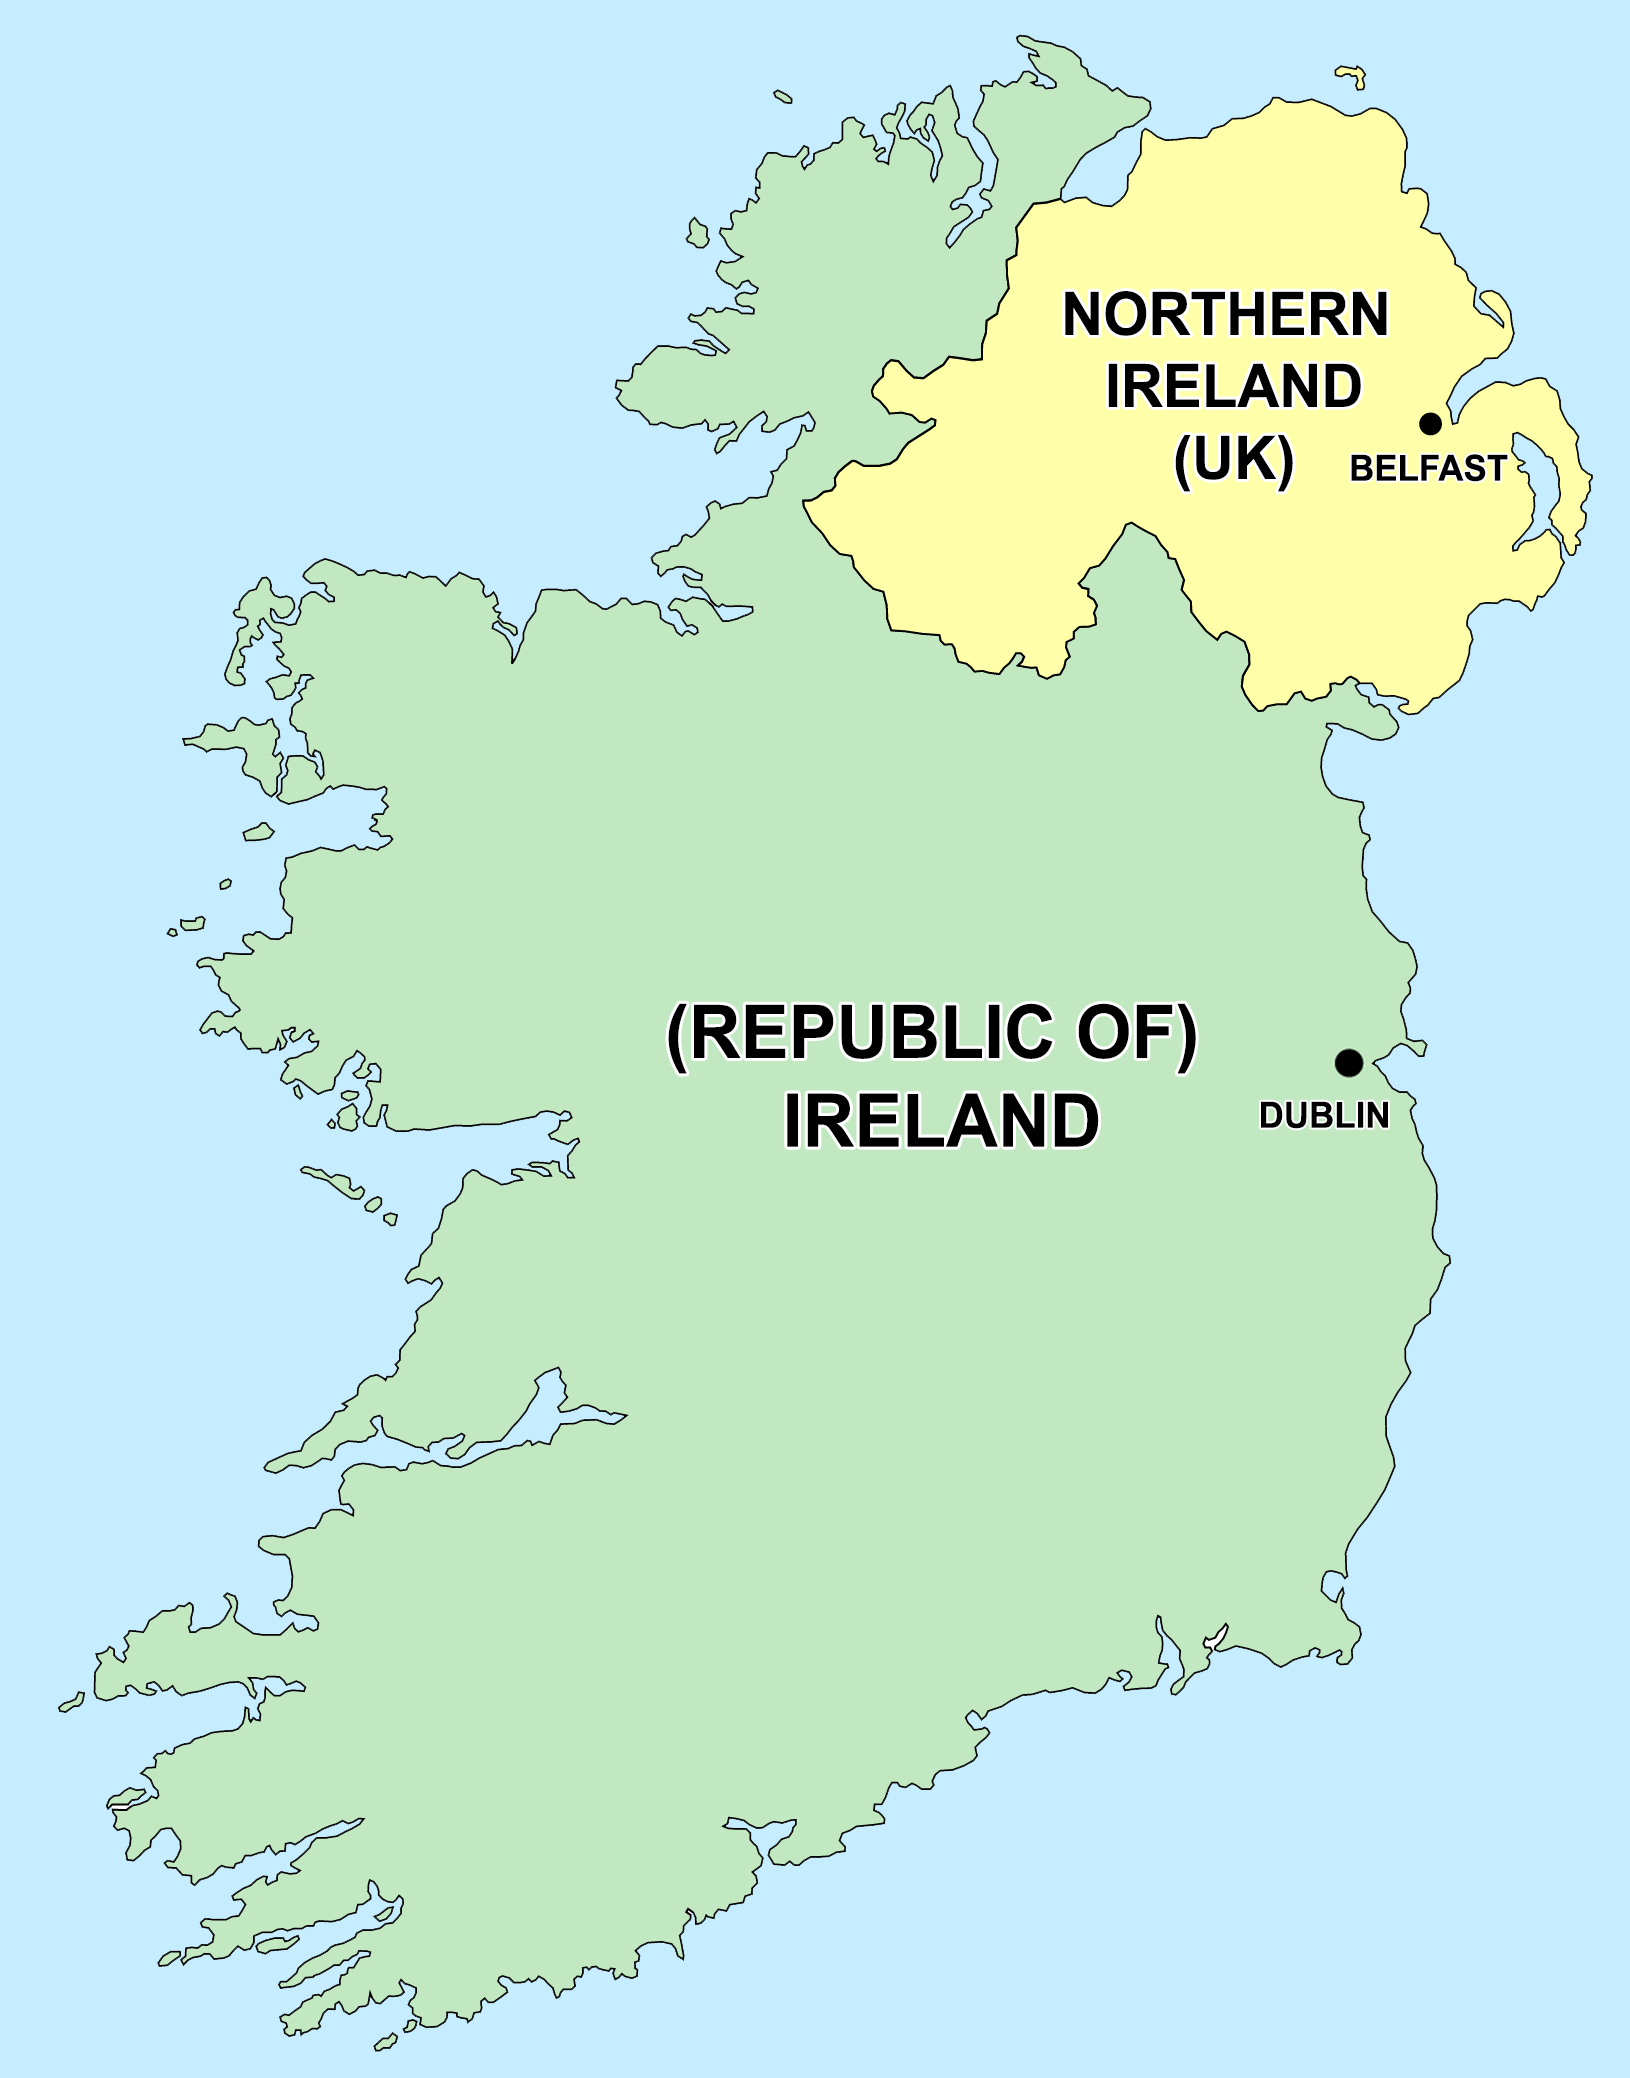 L'Irlanda fu conquistata da popolazioni celtiche intorno al 4° secolo a.C. e sino al 12° secolo d.C. mantenne una sostanziale